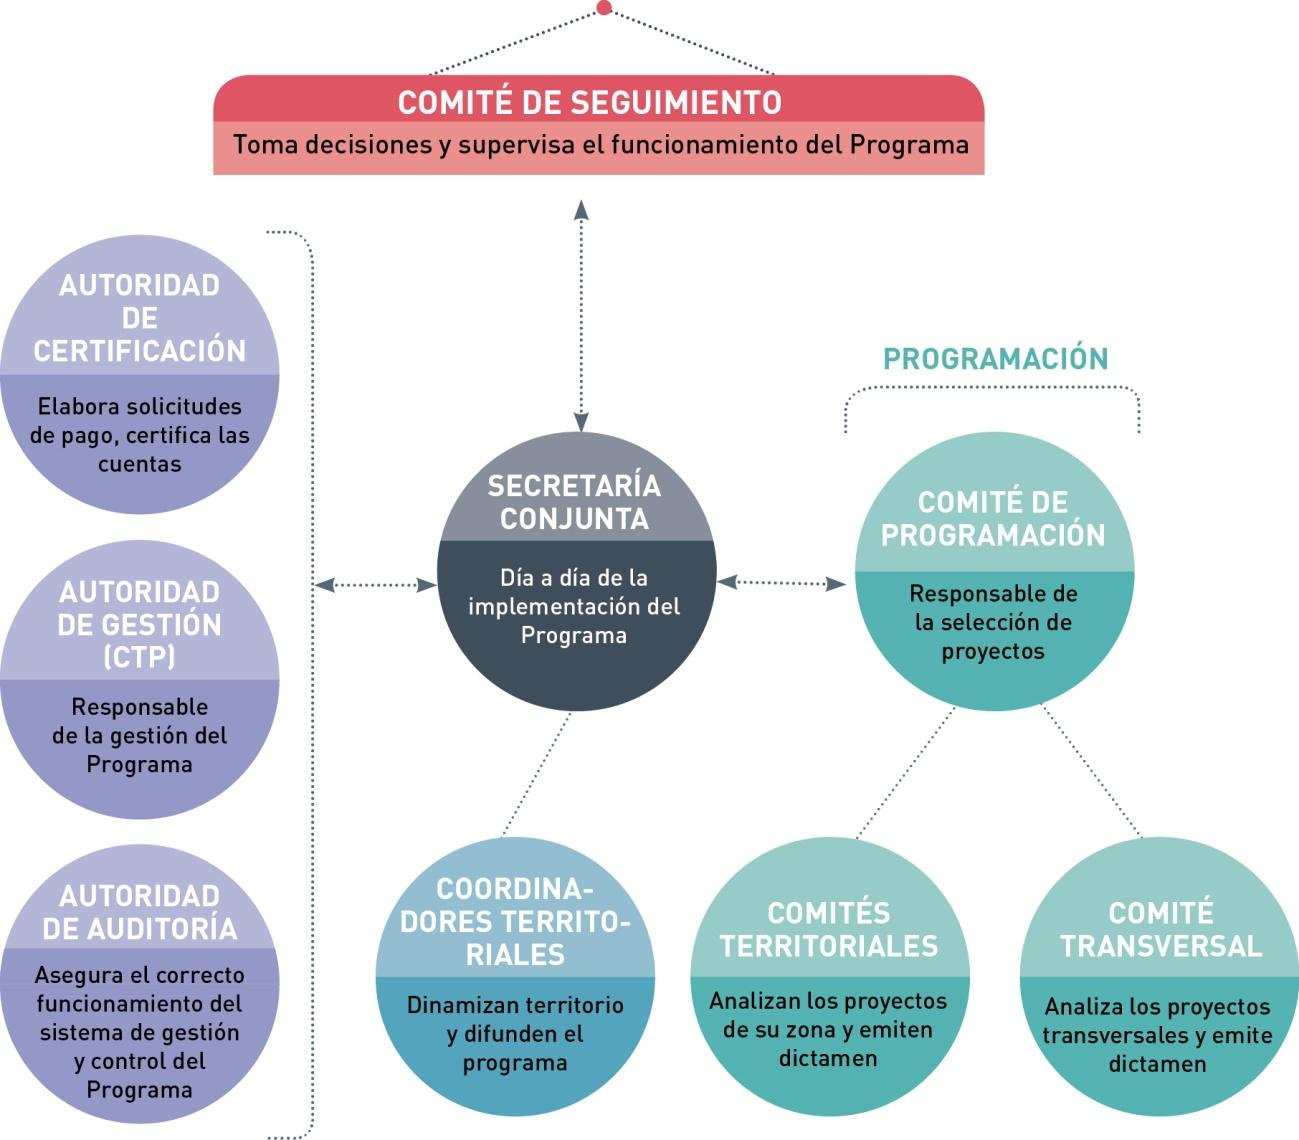 A.5. Cómo se organiza el Programa Quién forma el Comité de Programación y Comité de Seguimiento 5 departamentos franceses: Ariège, Haute-Garonne, Hautes-Pyrénées, Pyrénées-Atlantiques,